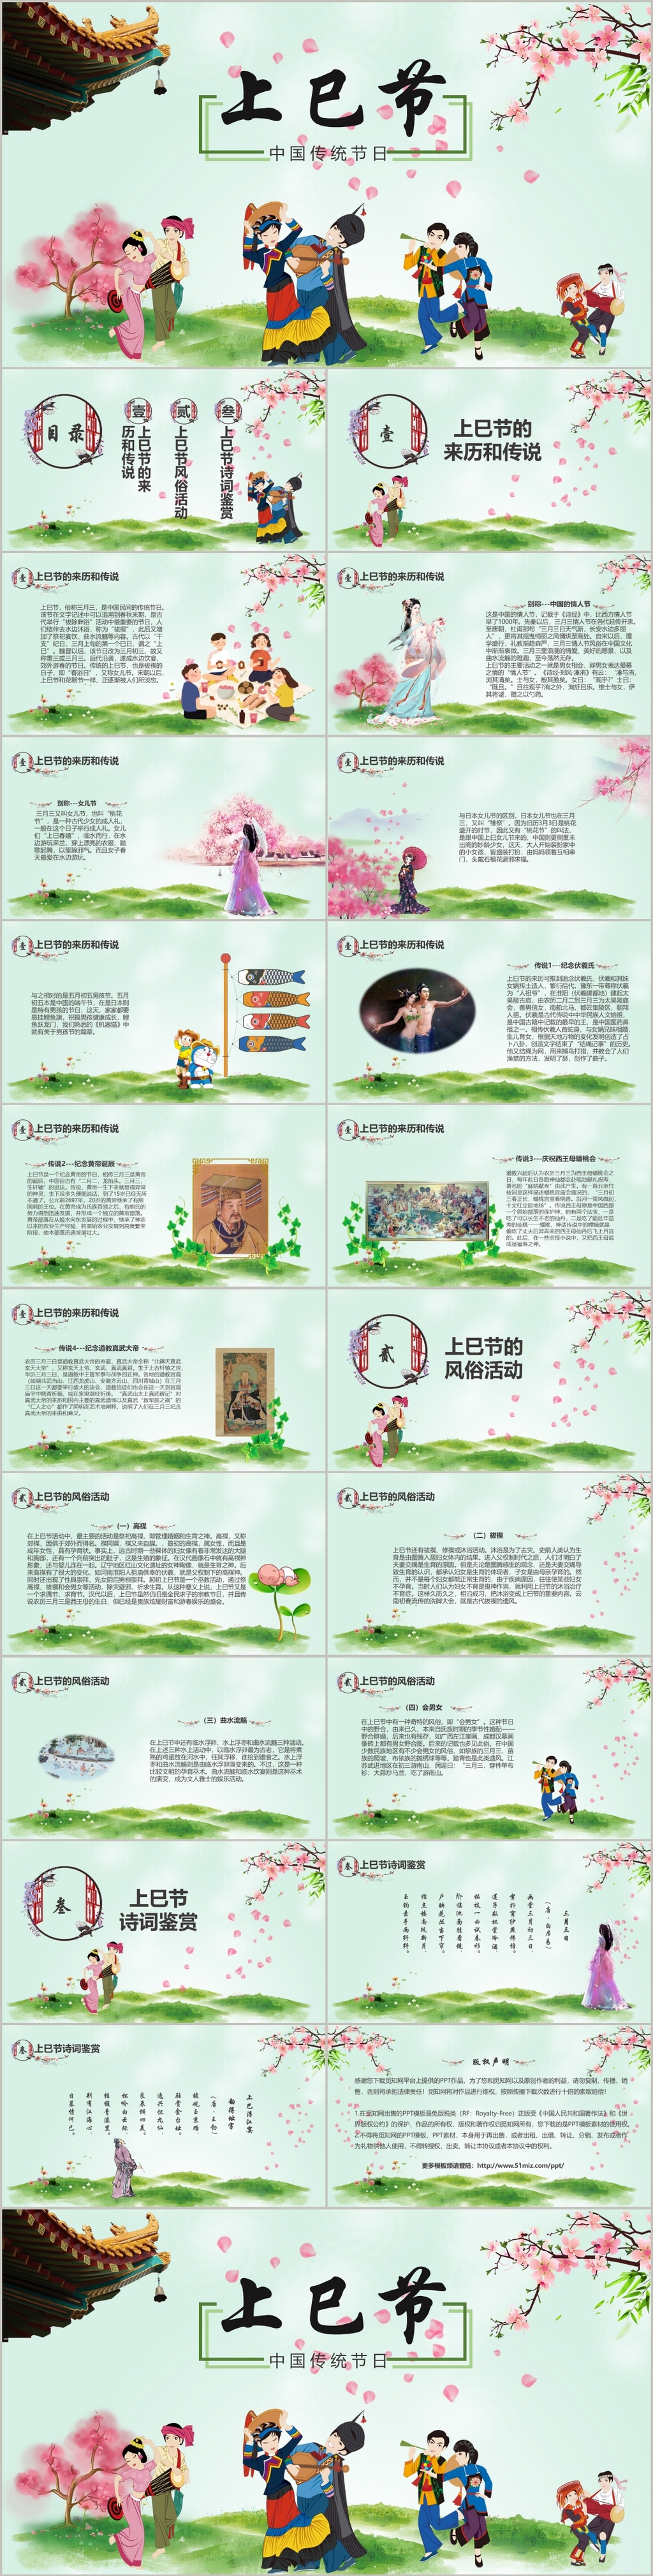 小清新卡通插画风中国传统节日上巳节节日PPT模板